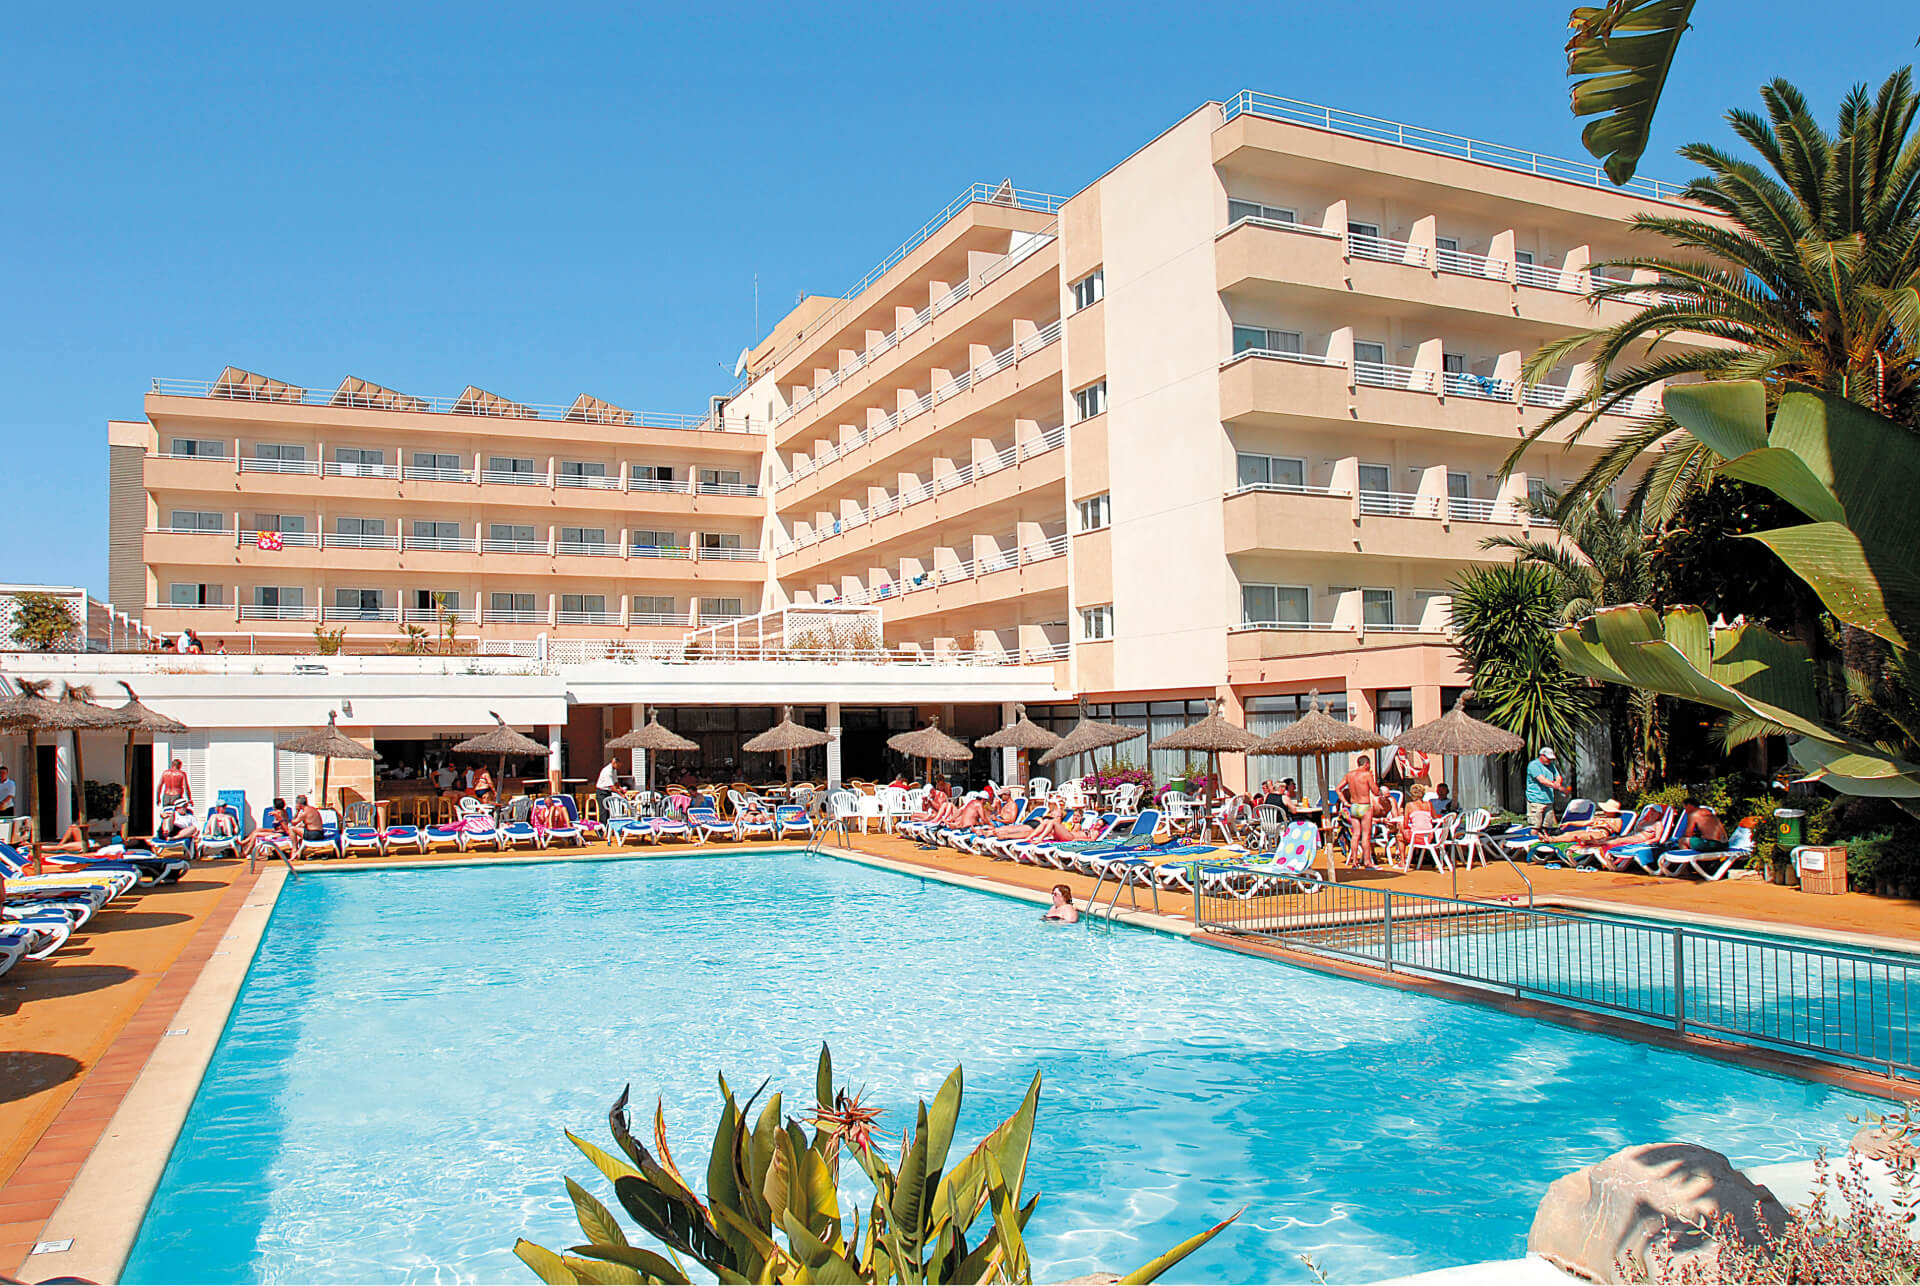 TUI SUNEO Santa Ponsa Hotel, Majorca Holiday Hypermarket